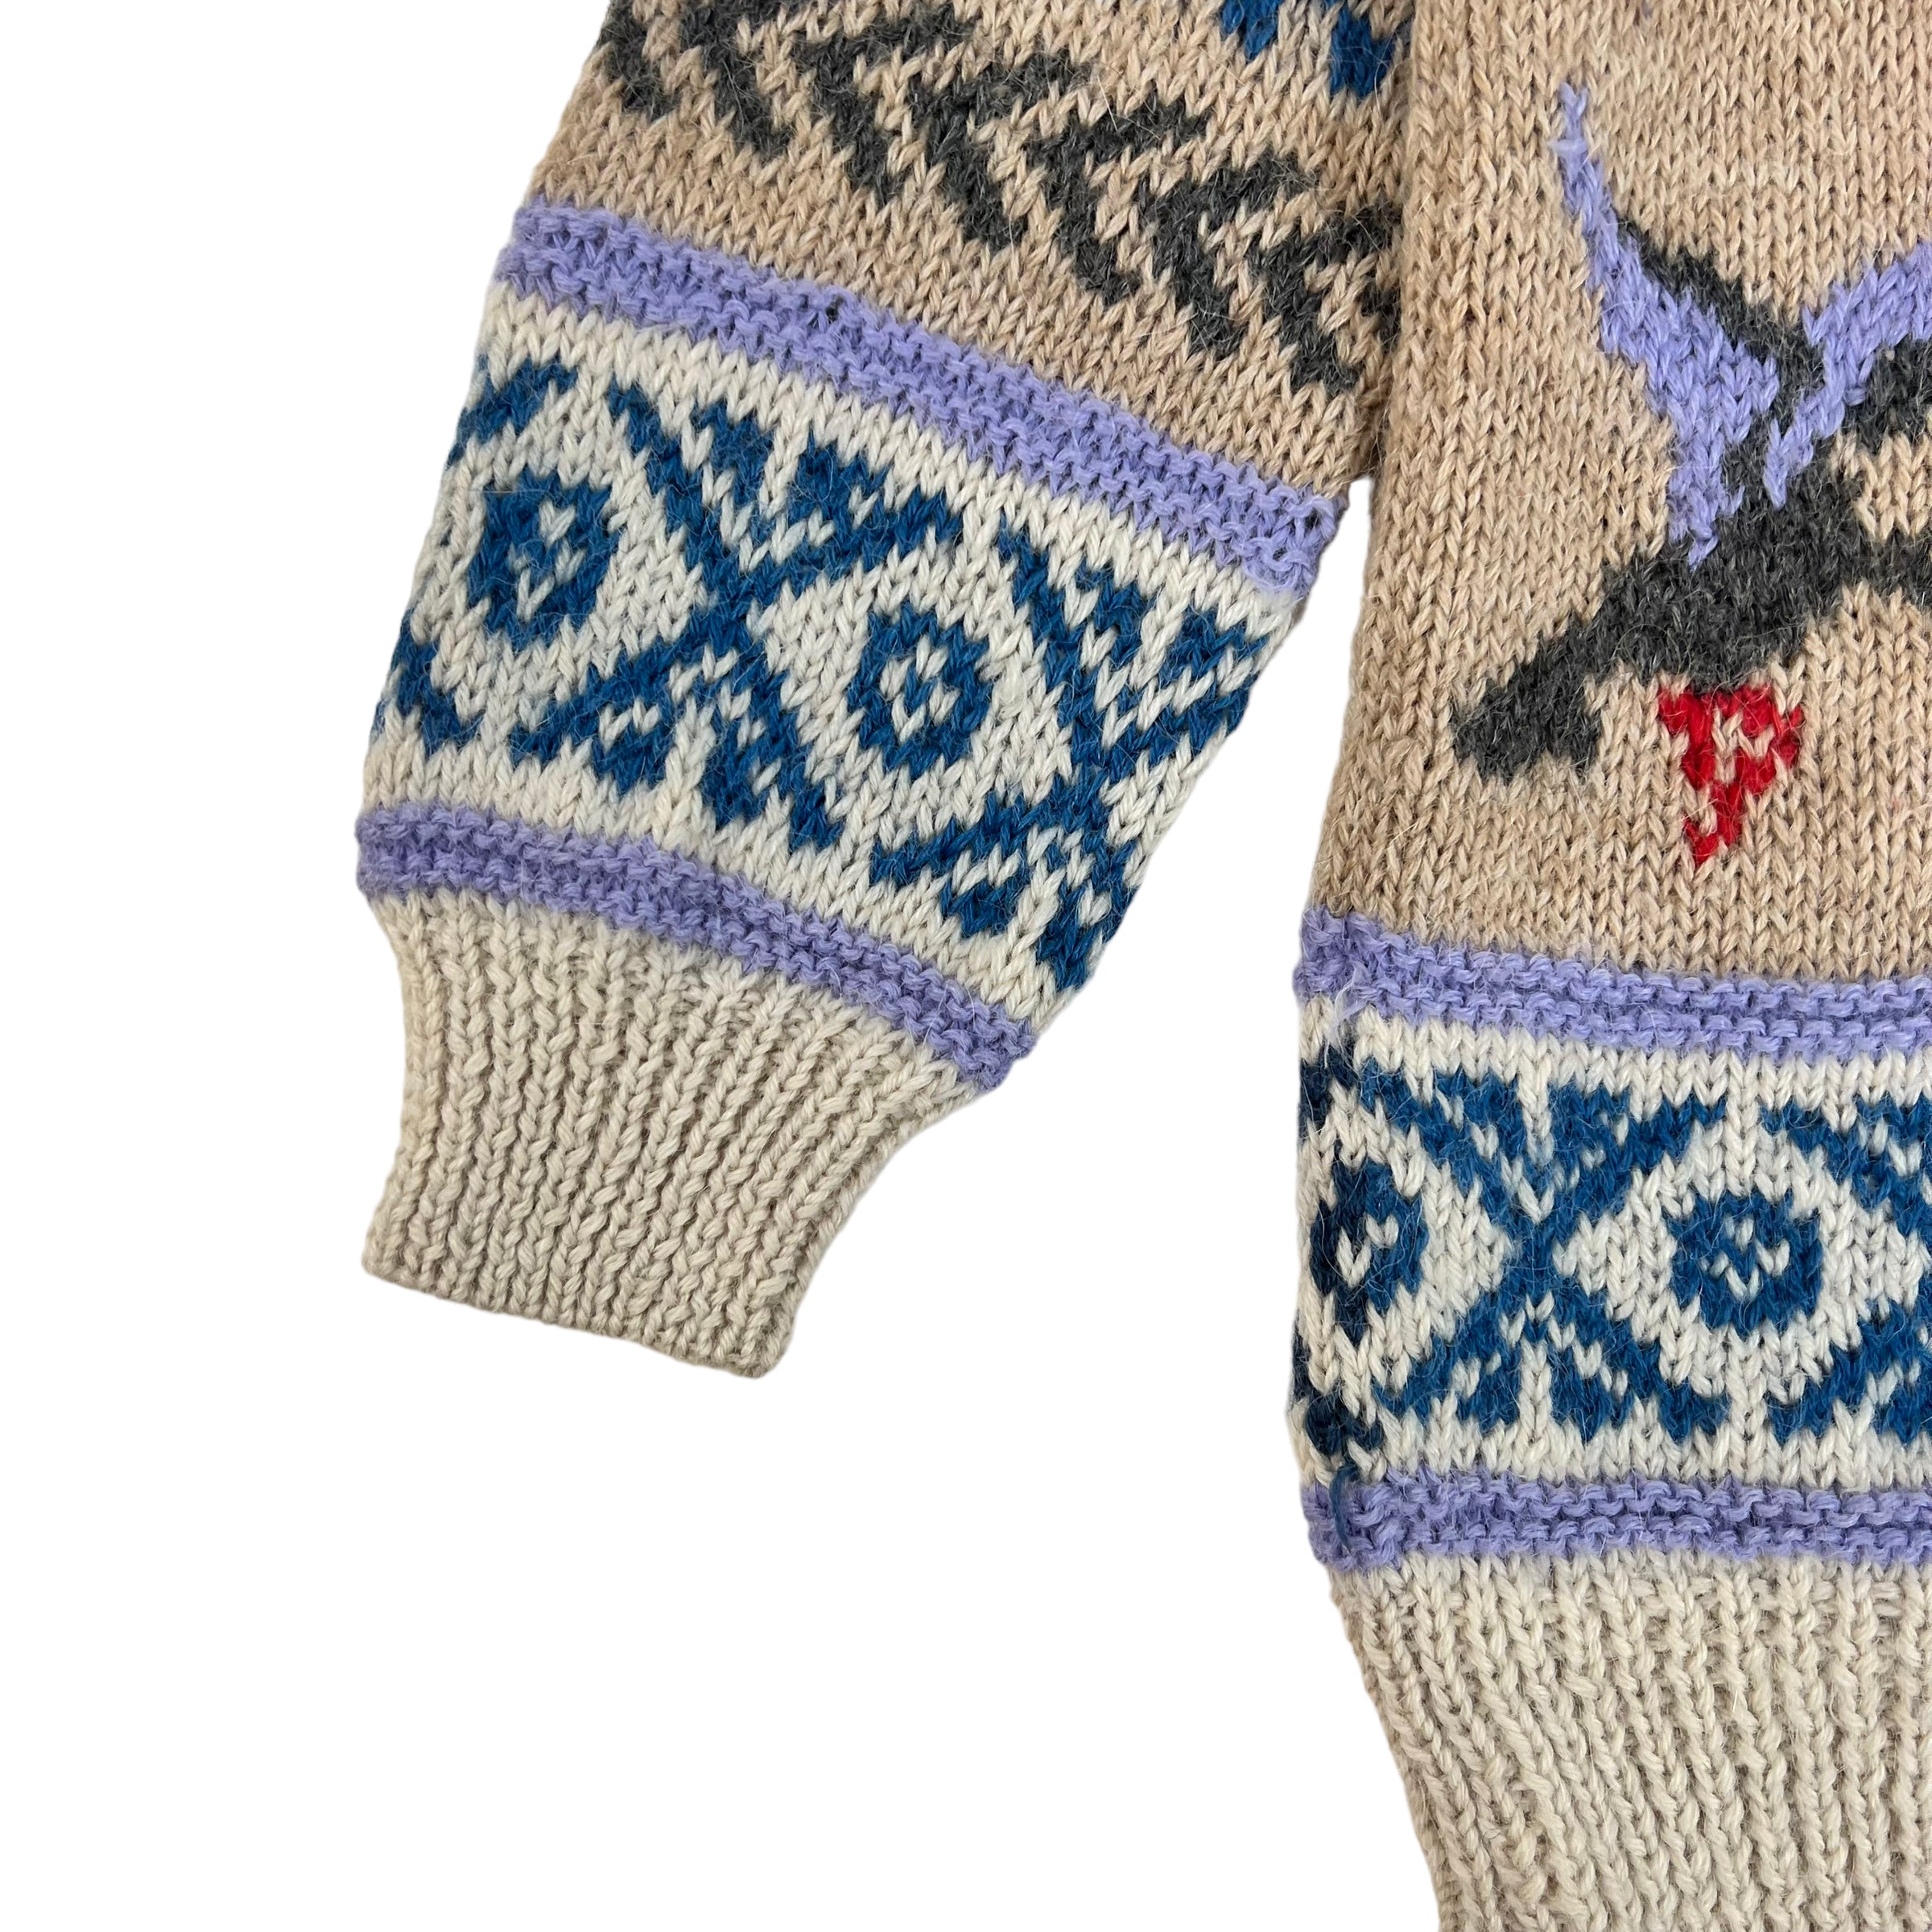 Vintage Pigeon Patterned Knit